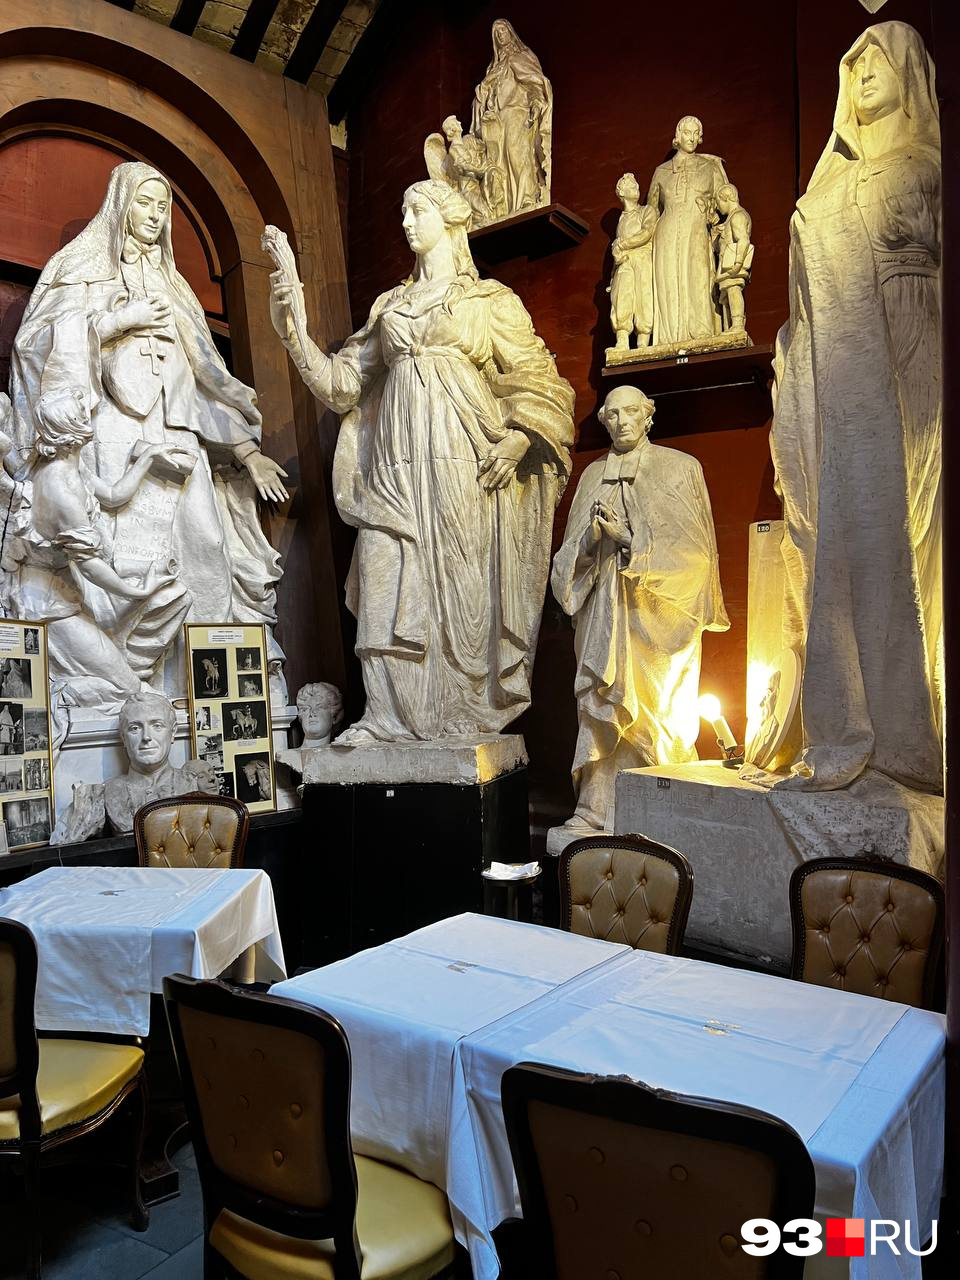 А это кафе со статуями внутри, мы случайно на него наткнулись и сначала приняли за музей